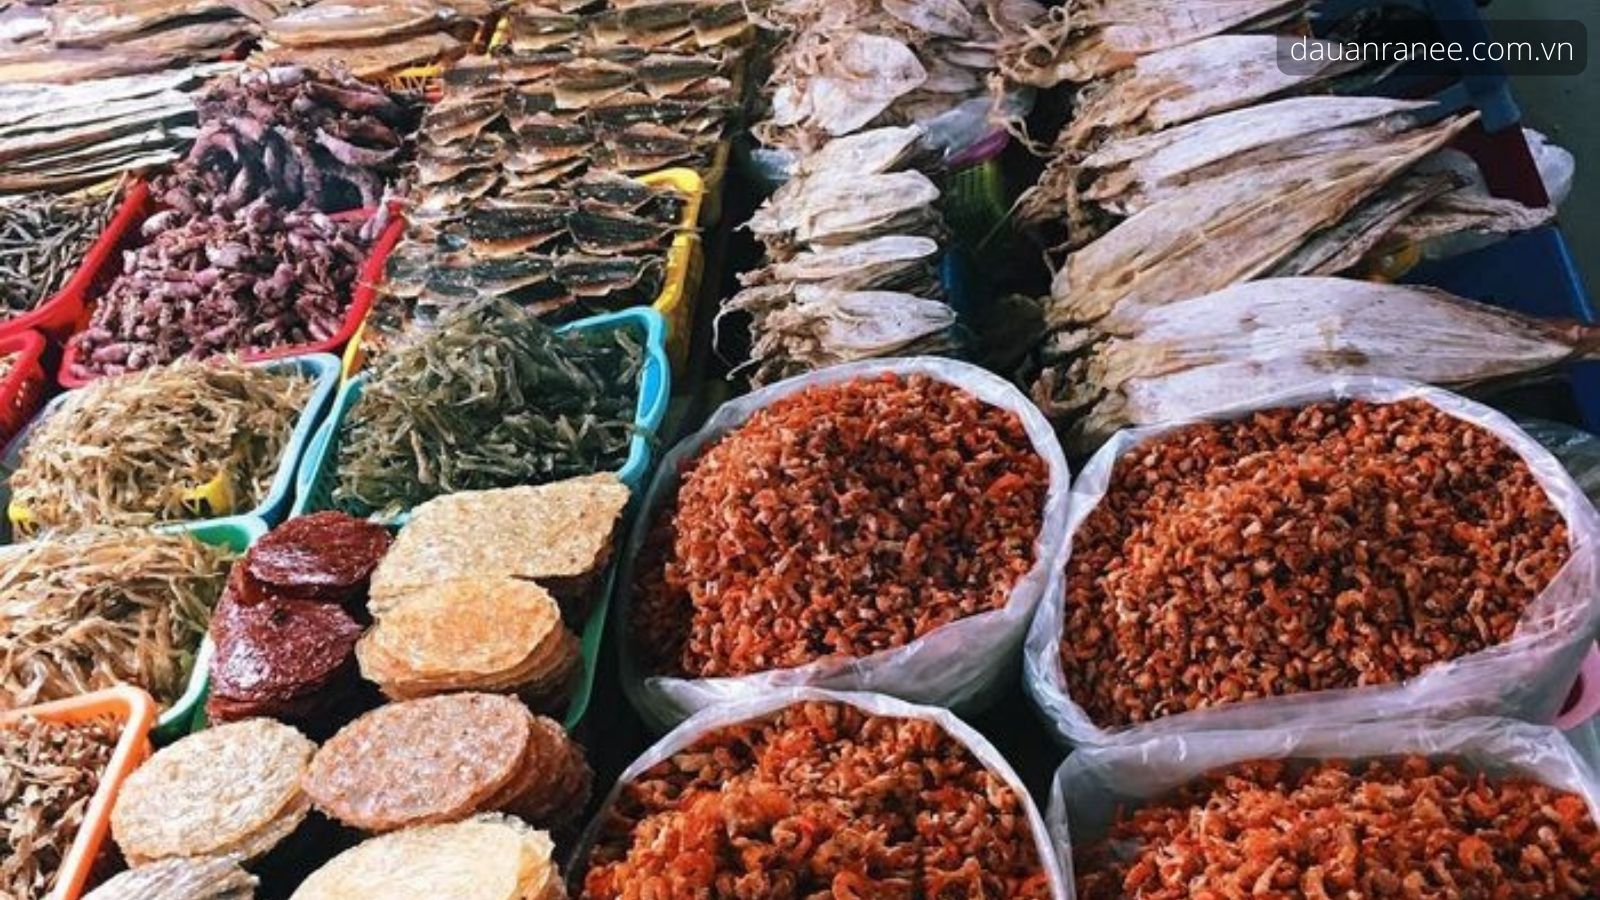 Đặc sản Bình Thuận không thể thiếu các loại hải sản khô